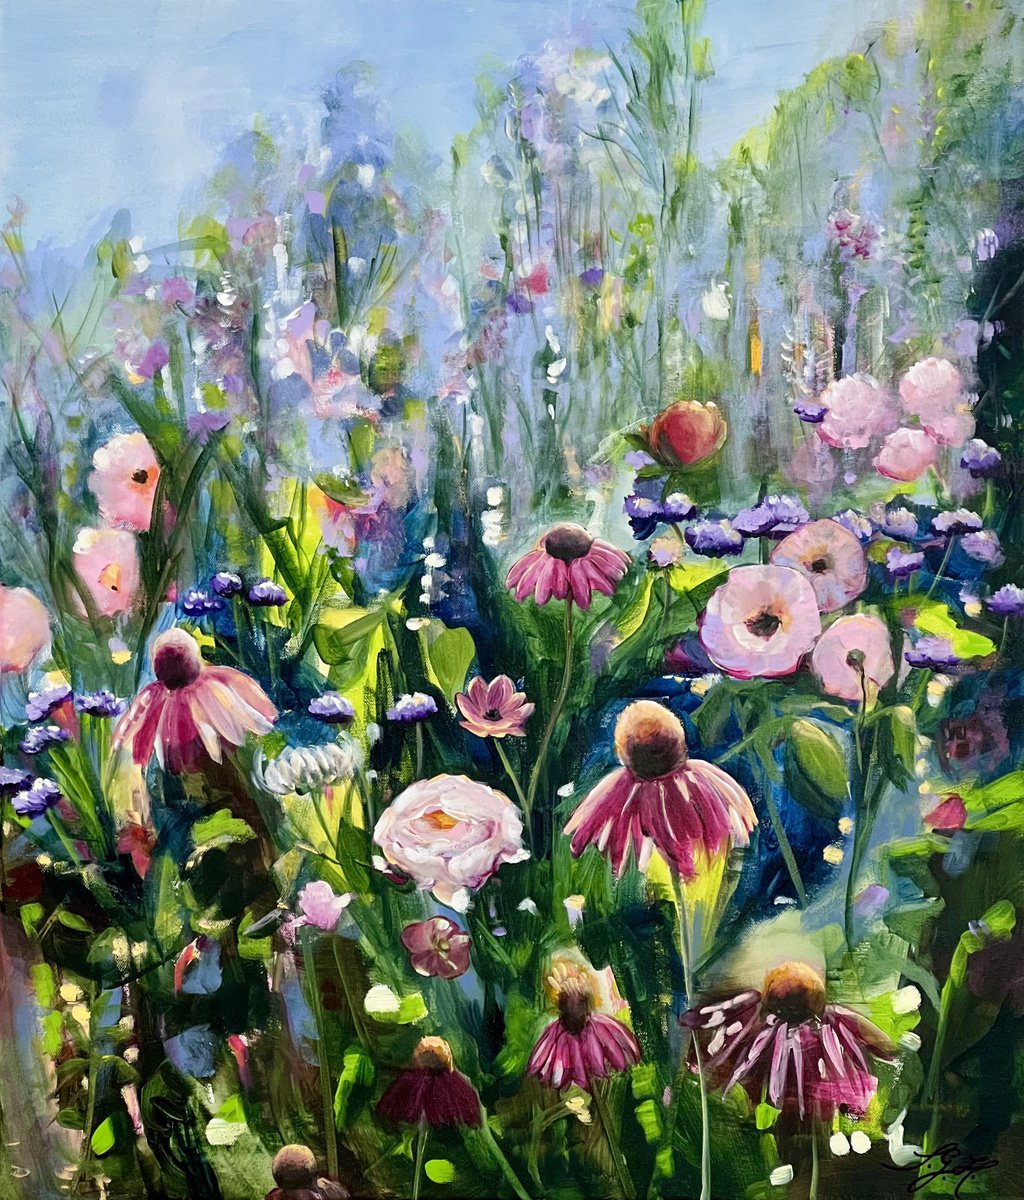 Summer In Bloom 1 by Sandra Gebhardt-Hoepfner